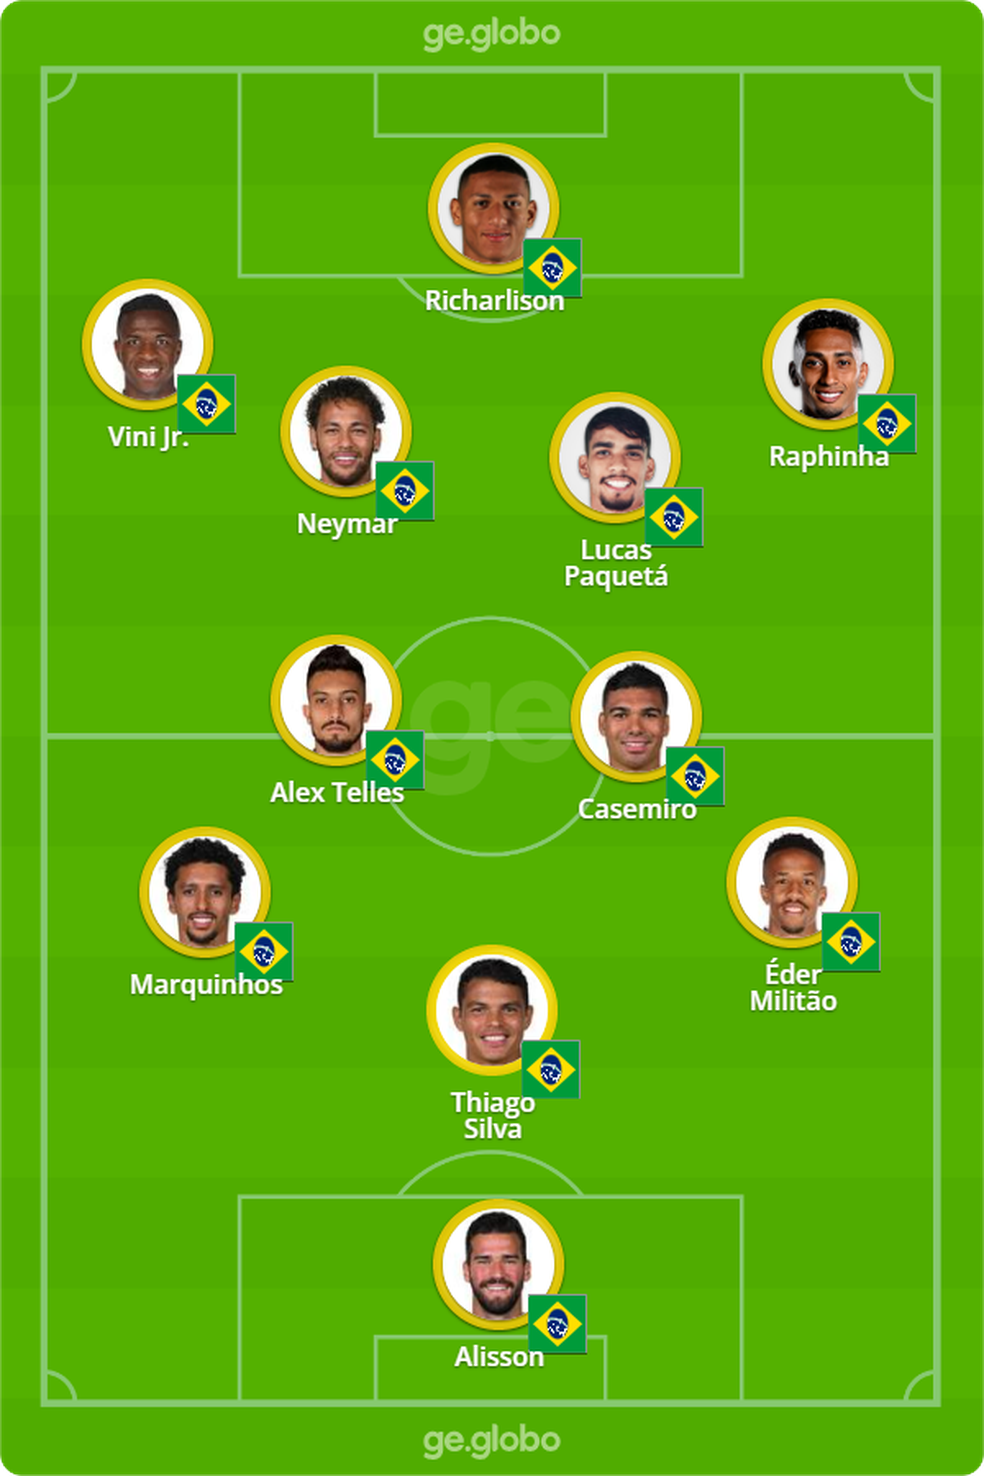 Formação da seleção brasileira com a bola — Foto: ge